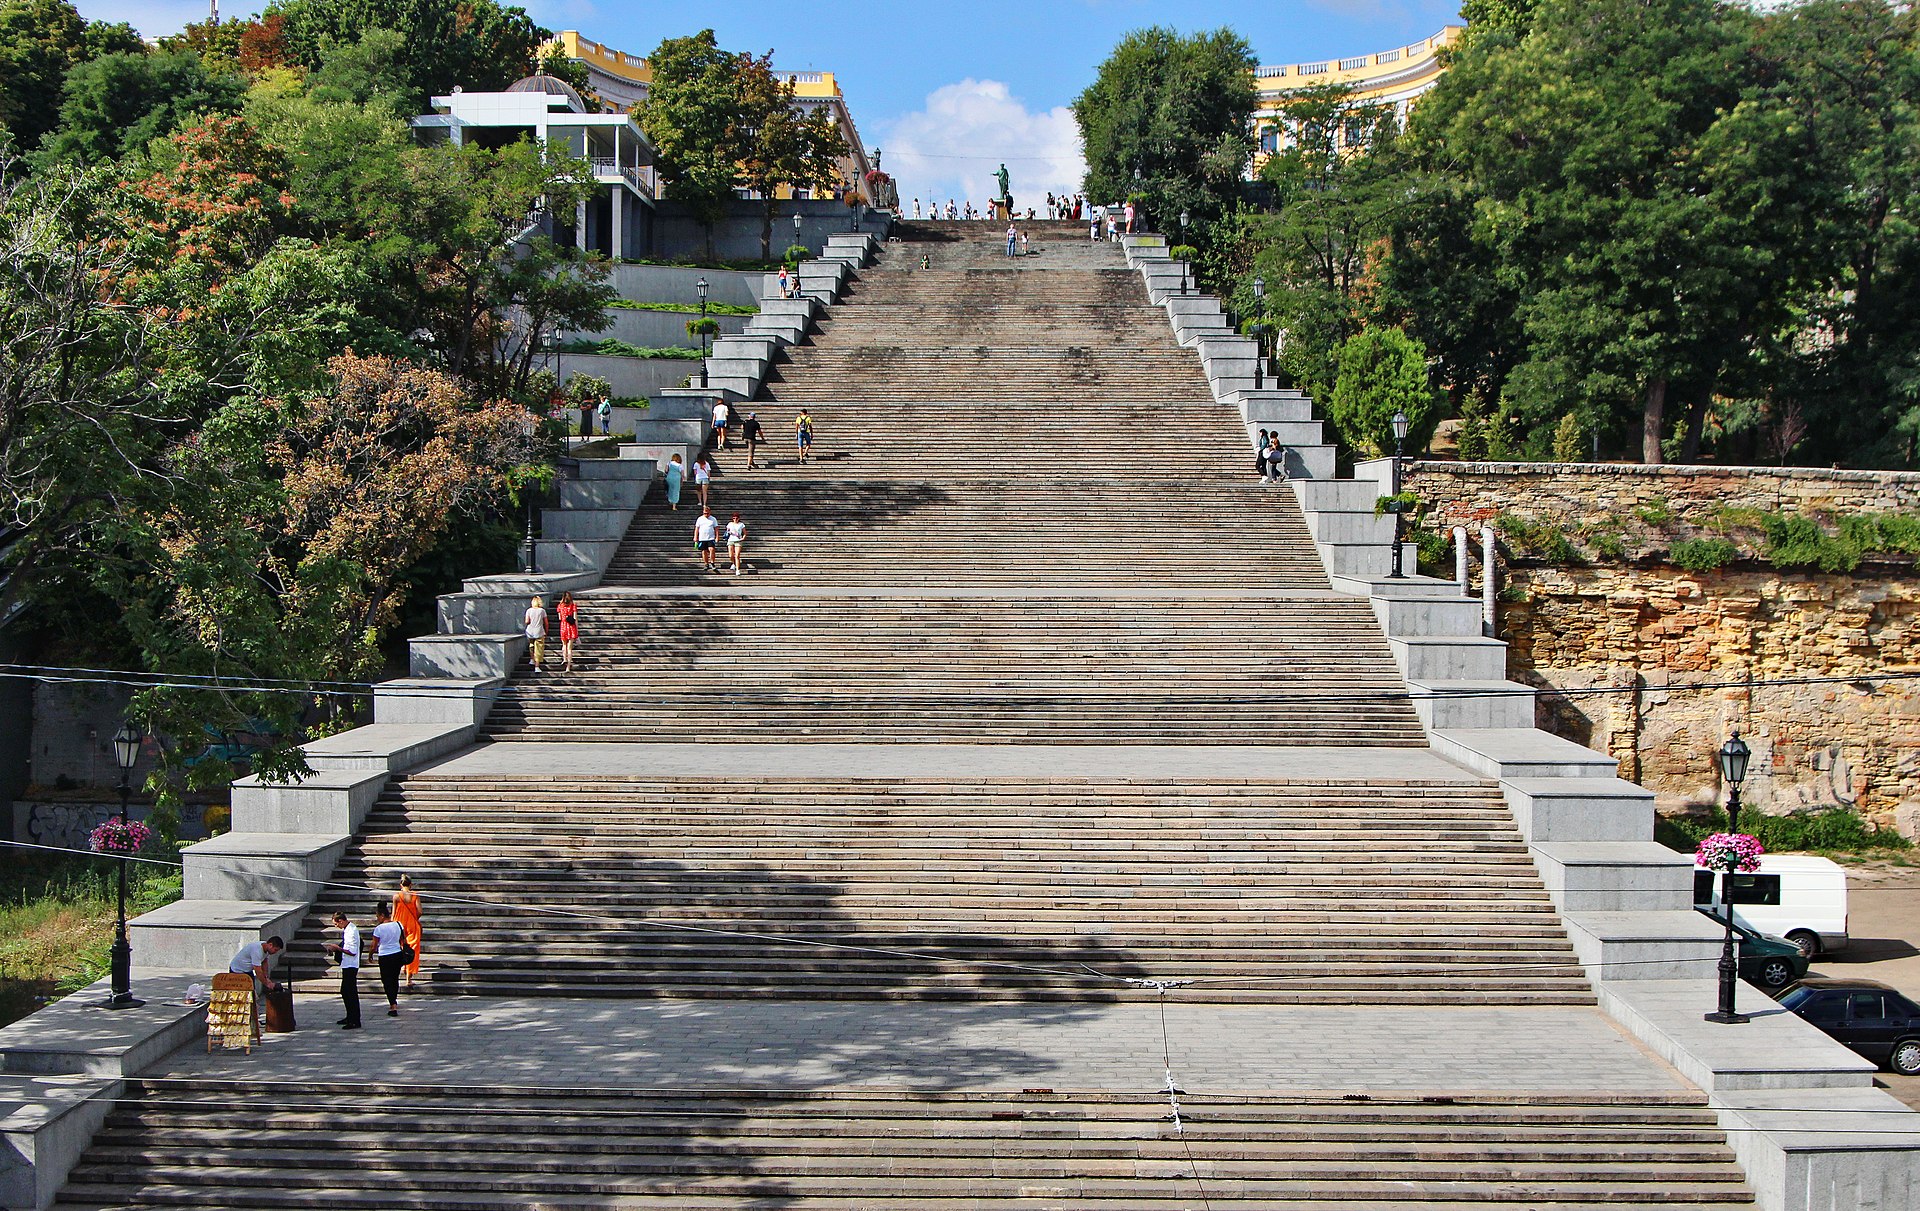 Οι Σκάλες της Οδησσού που έγιναν σύμβολο της πόλης, όταν βάφτηκαν στο αίμα. Πως χάθηκαν οκτώ σκαλιά